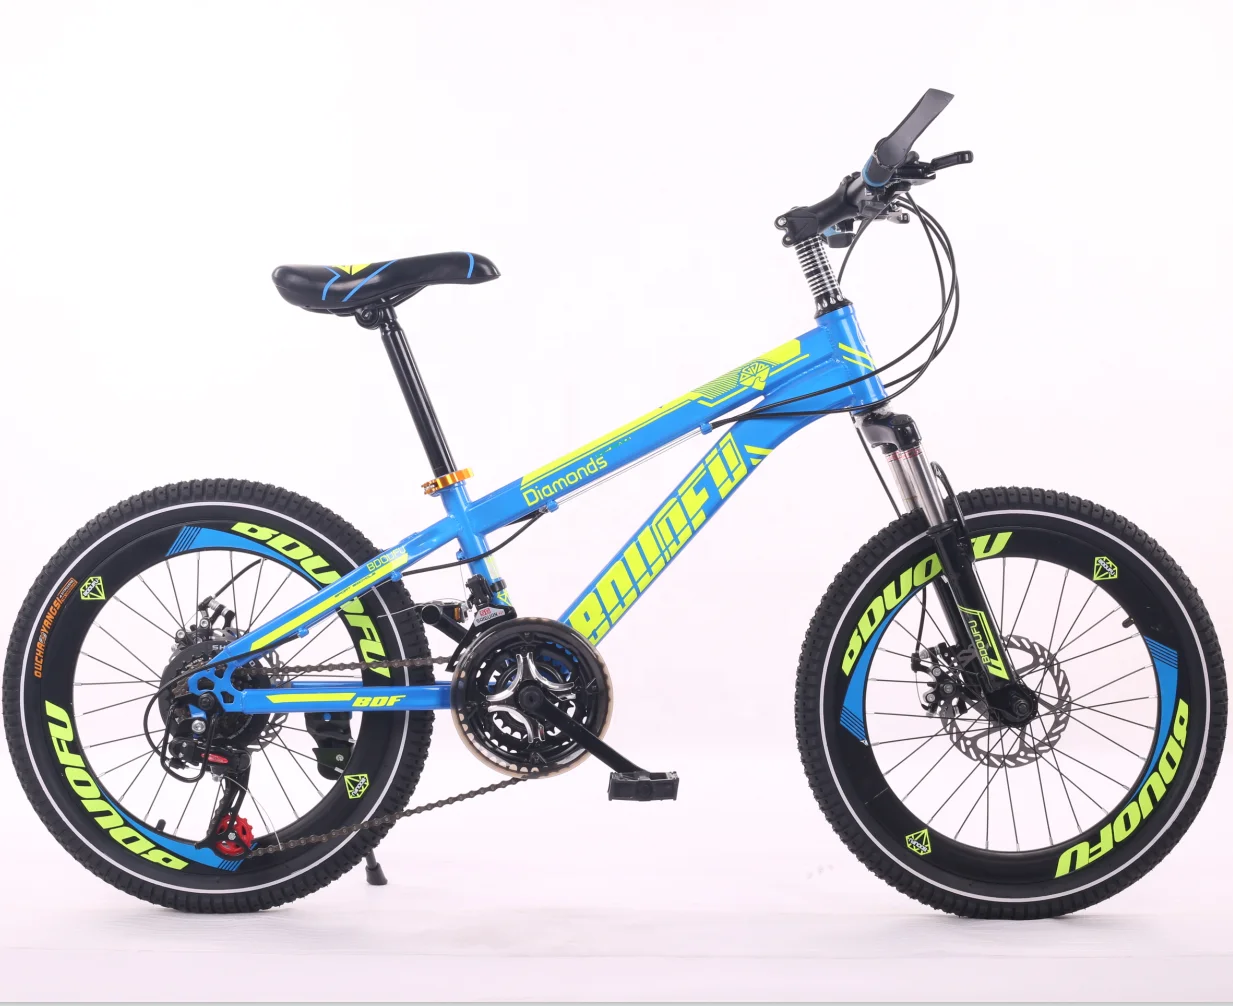 Купить велосипед для мальчика 8 10. BMX GTR 29 велосипед. Велосипед Твиттер МТБ, для детей 10 лет карбон. Велосипед для мальчика 10 лет. Скоростной велосипед для мальчика 10 лет.